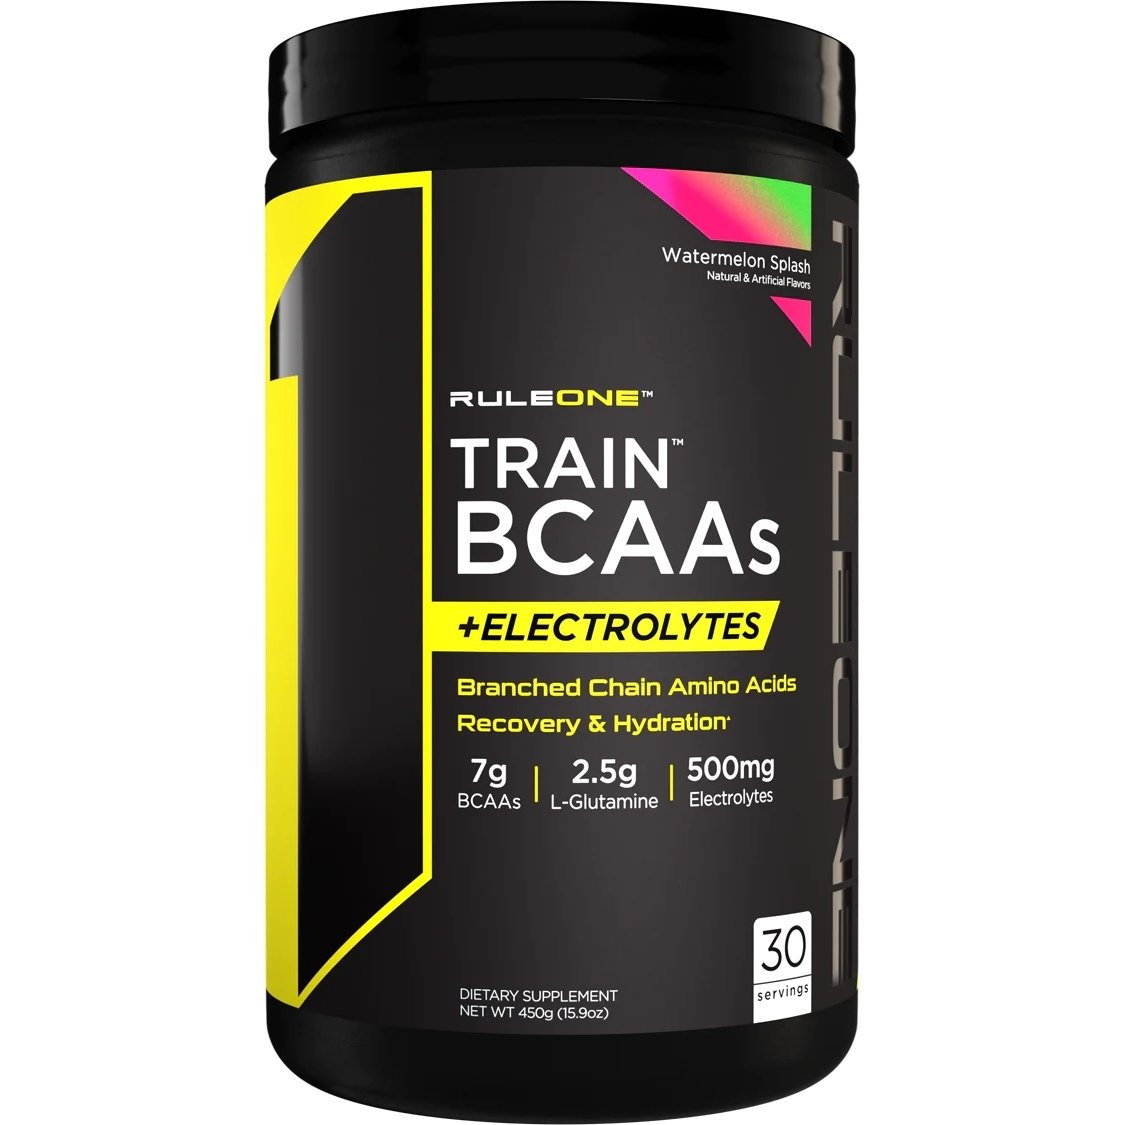 Аминокислота BCAA Rule 1 Train BCAAs + Electrolytes, 450 грамм Арбуз,  мл, Rule One Proteins. BCAA. Снижение веса Восстановление Антикатаболические свойства Сухая мышечная масса 